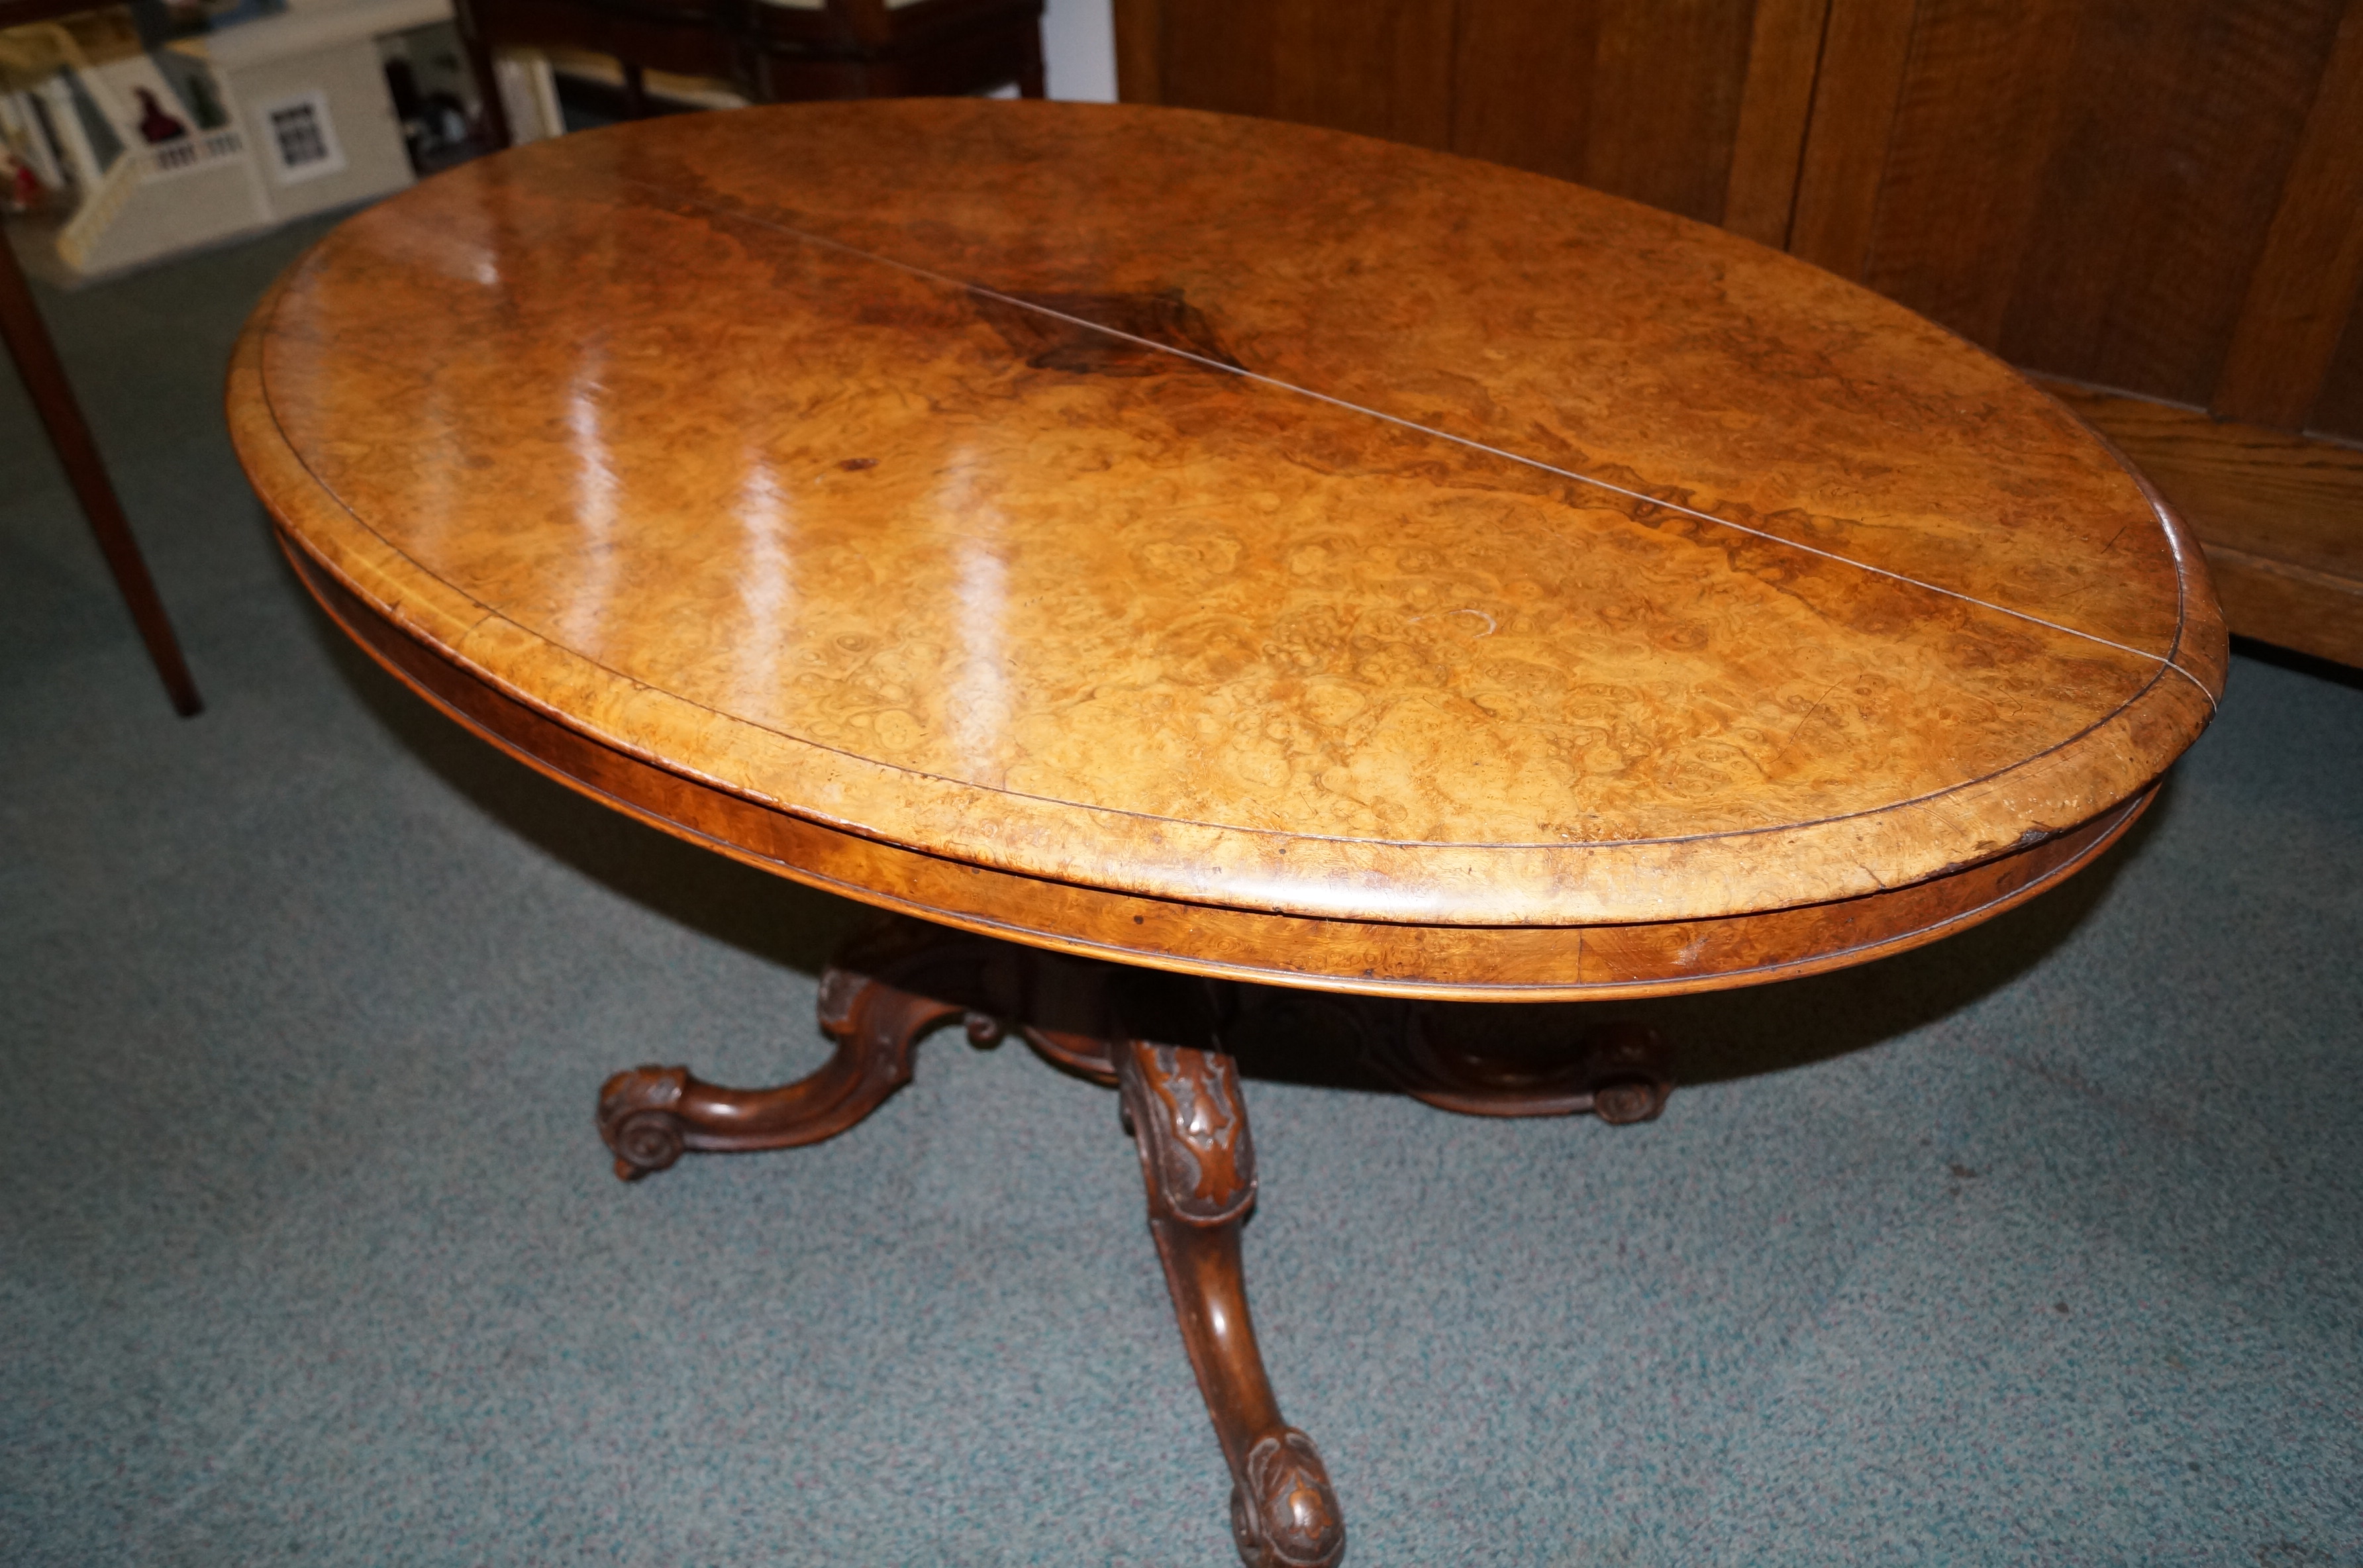 Victorian figured walnut tilt-top table, moulded t